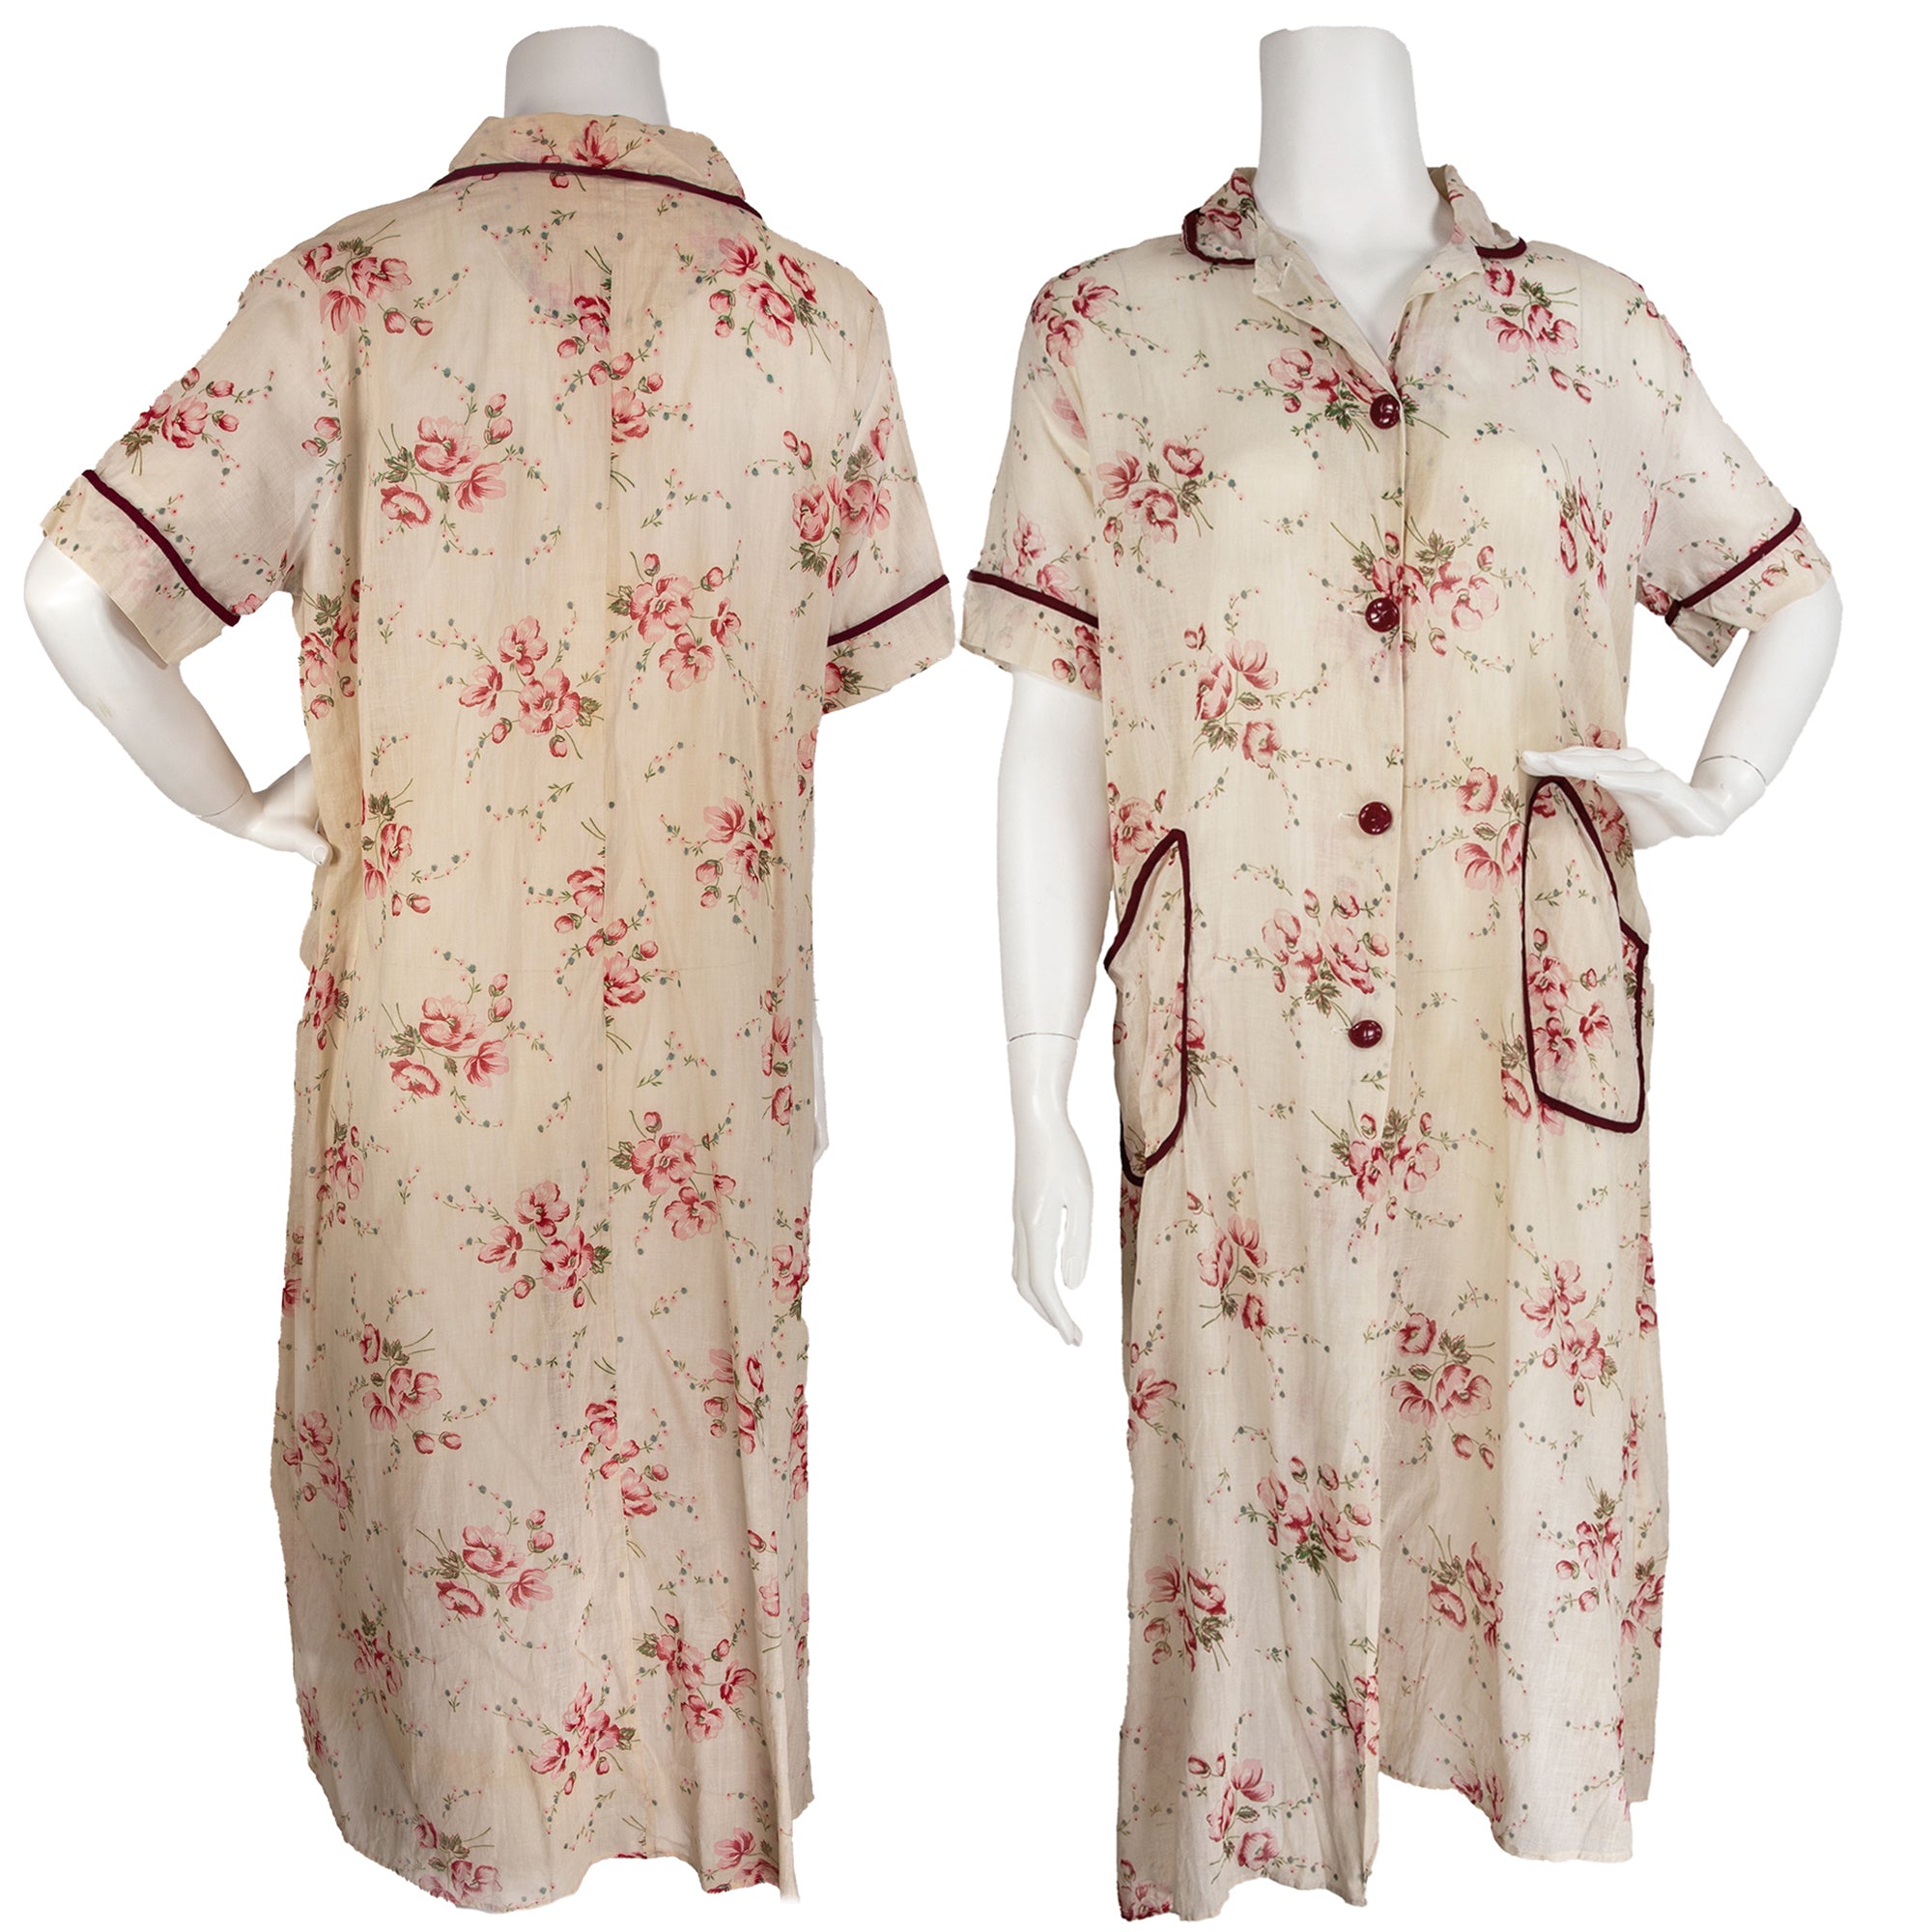 1930s Cotton Floral Dress